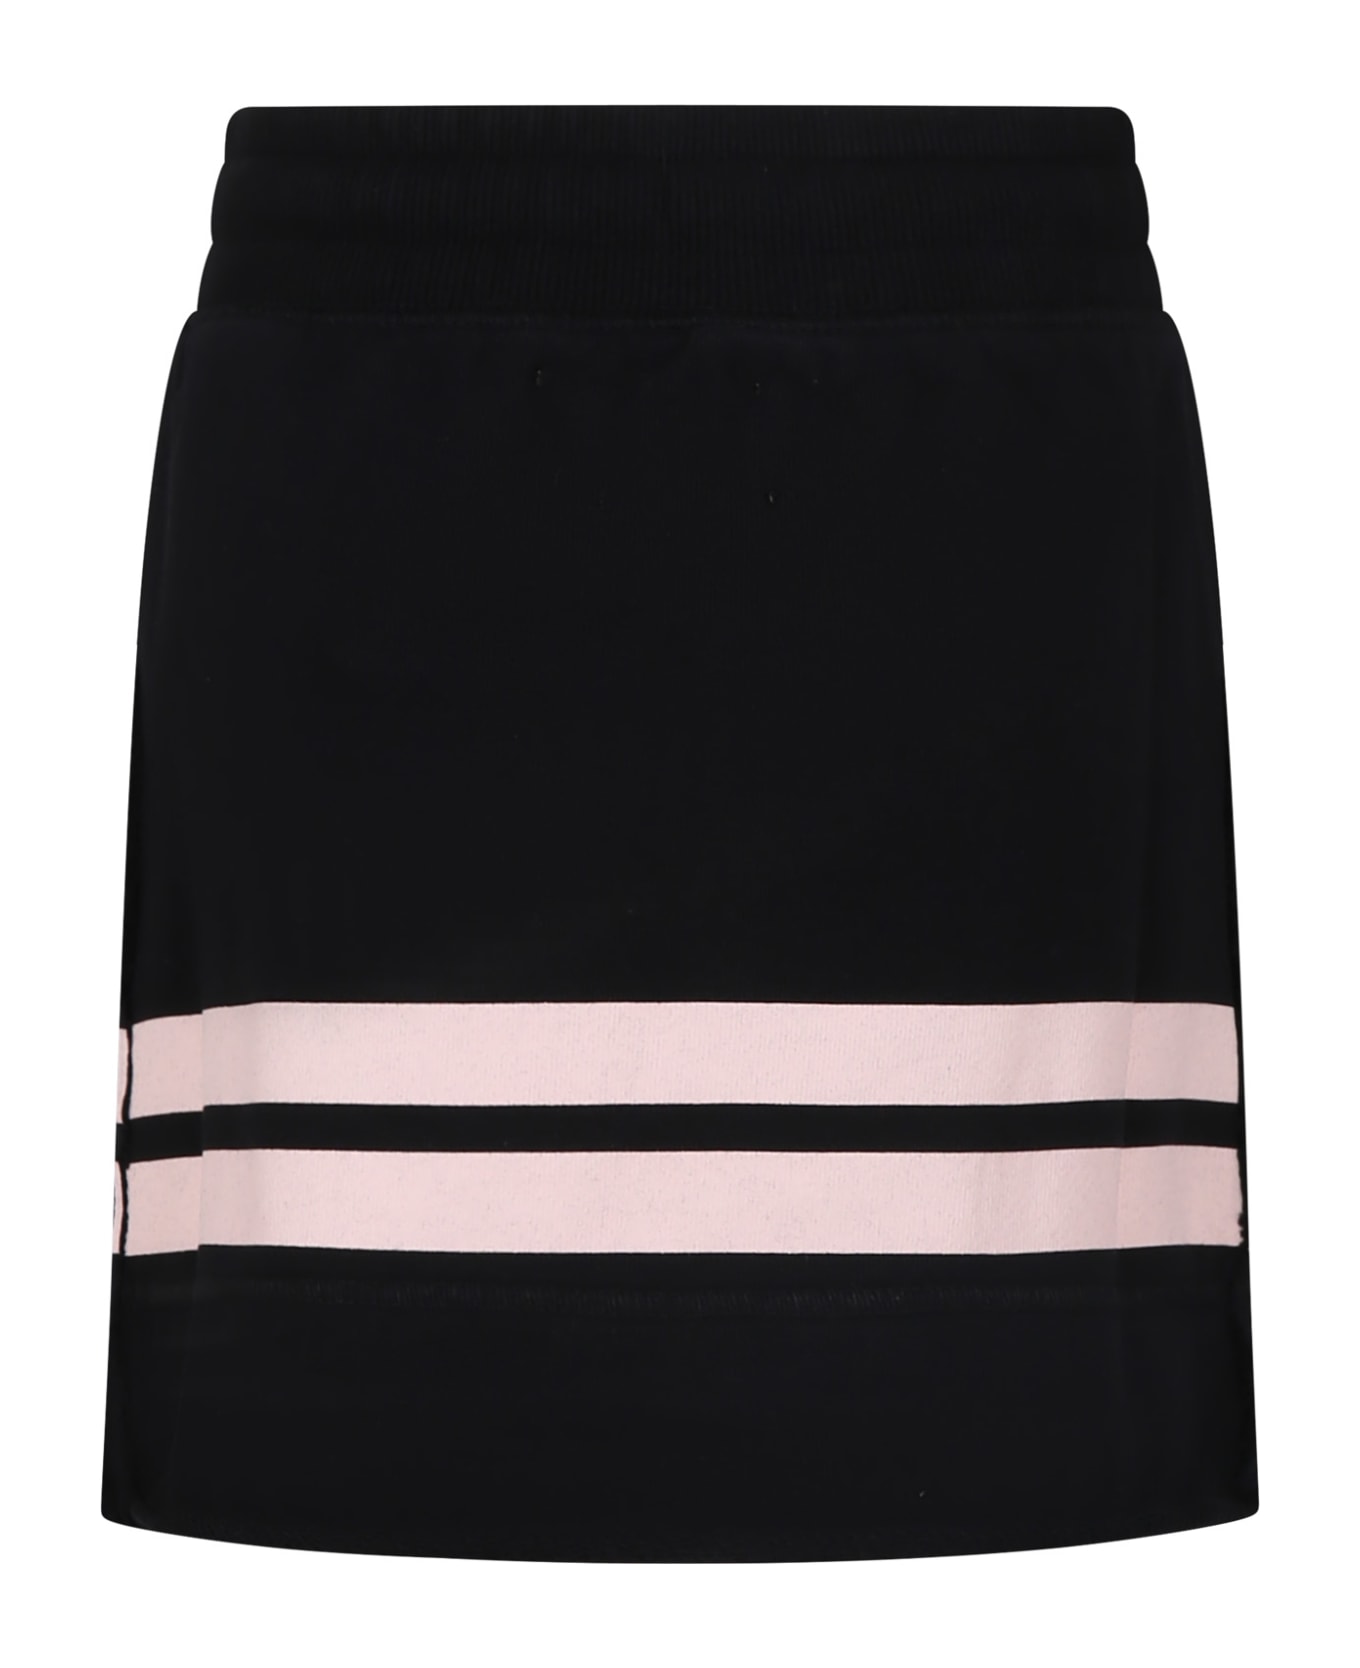 Off-White Black Skirt For Girl With Logo - Black